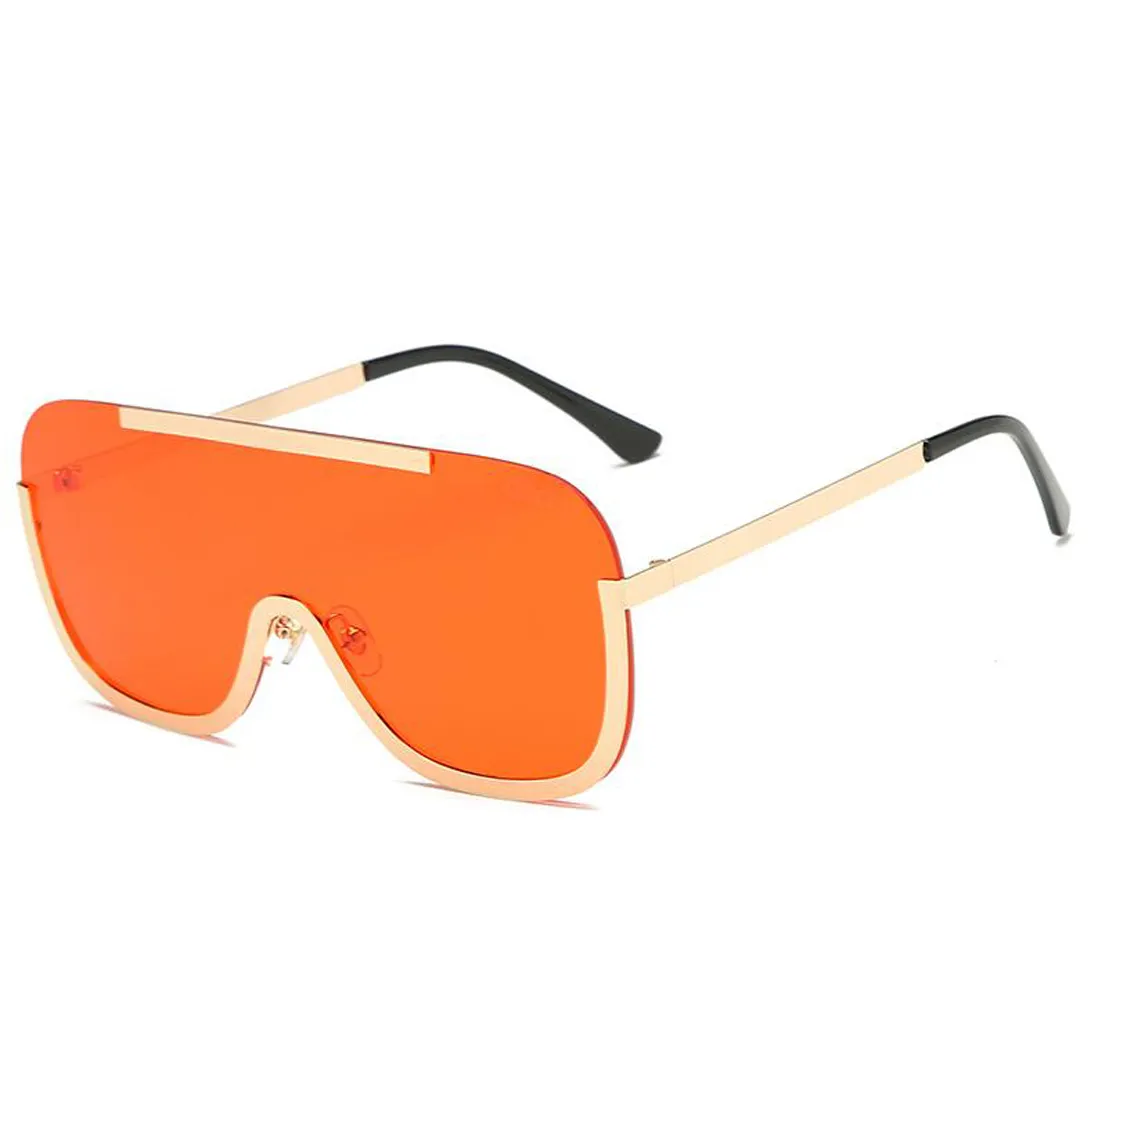 Été nouvelle femme homme conduite en plein air lunettes de soleil dames métal design de mode lunettes de soleil cyclisme lunettes plage lunettes de soleil livraison directe